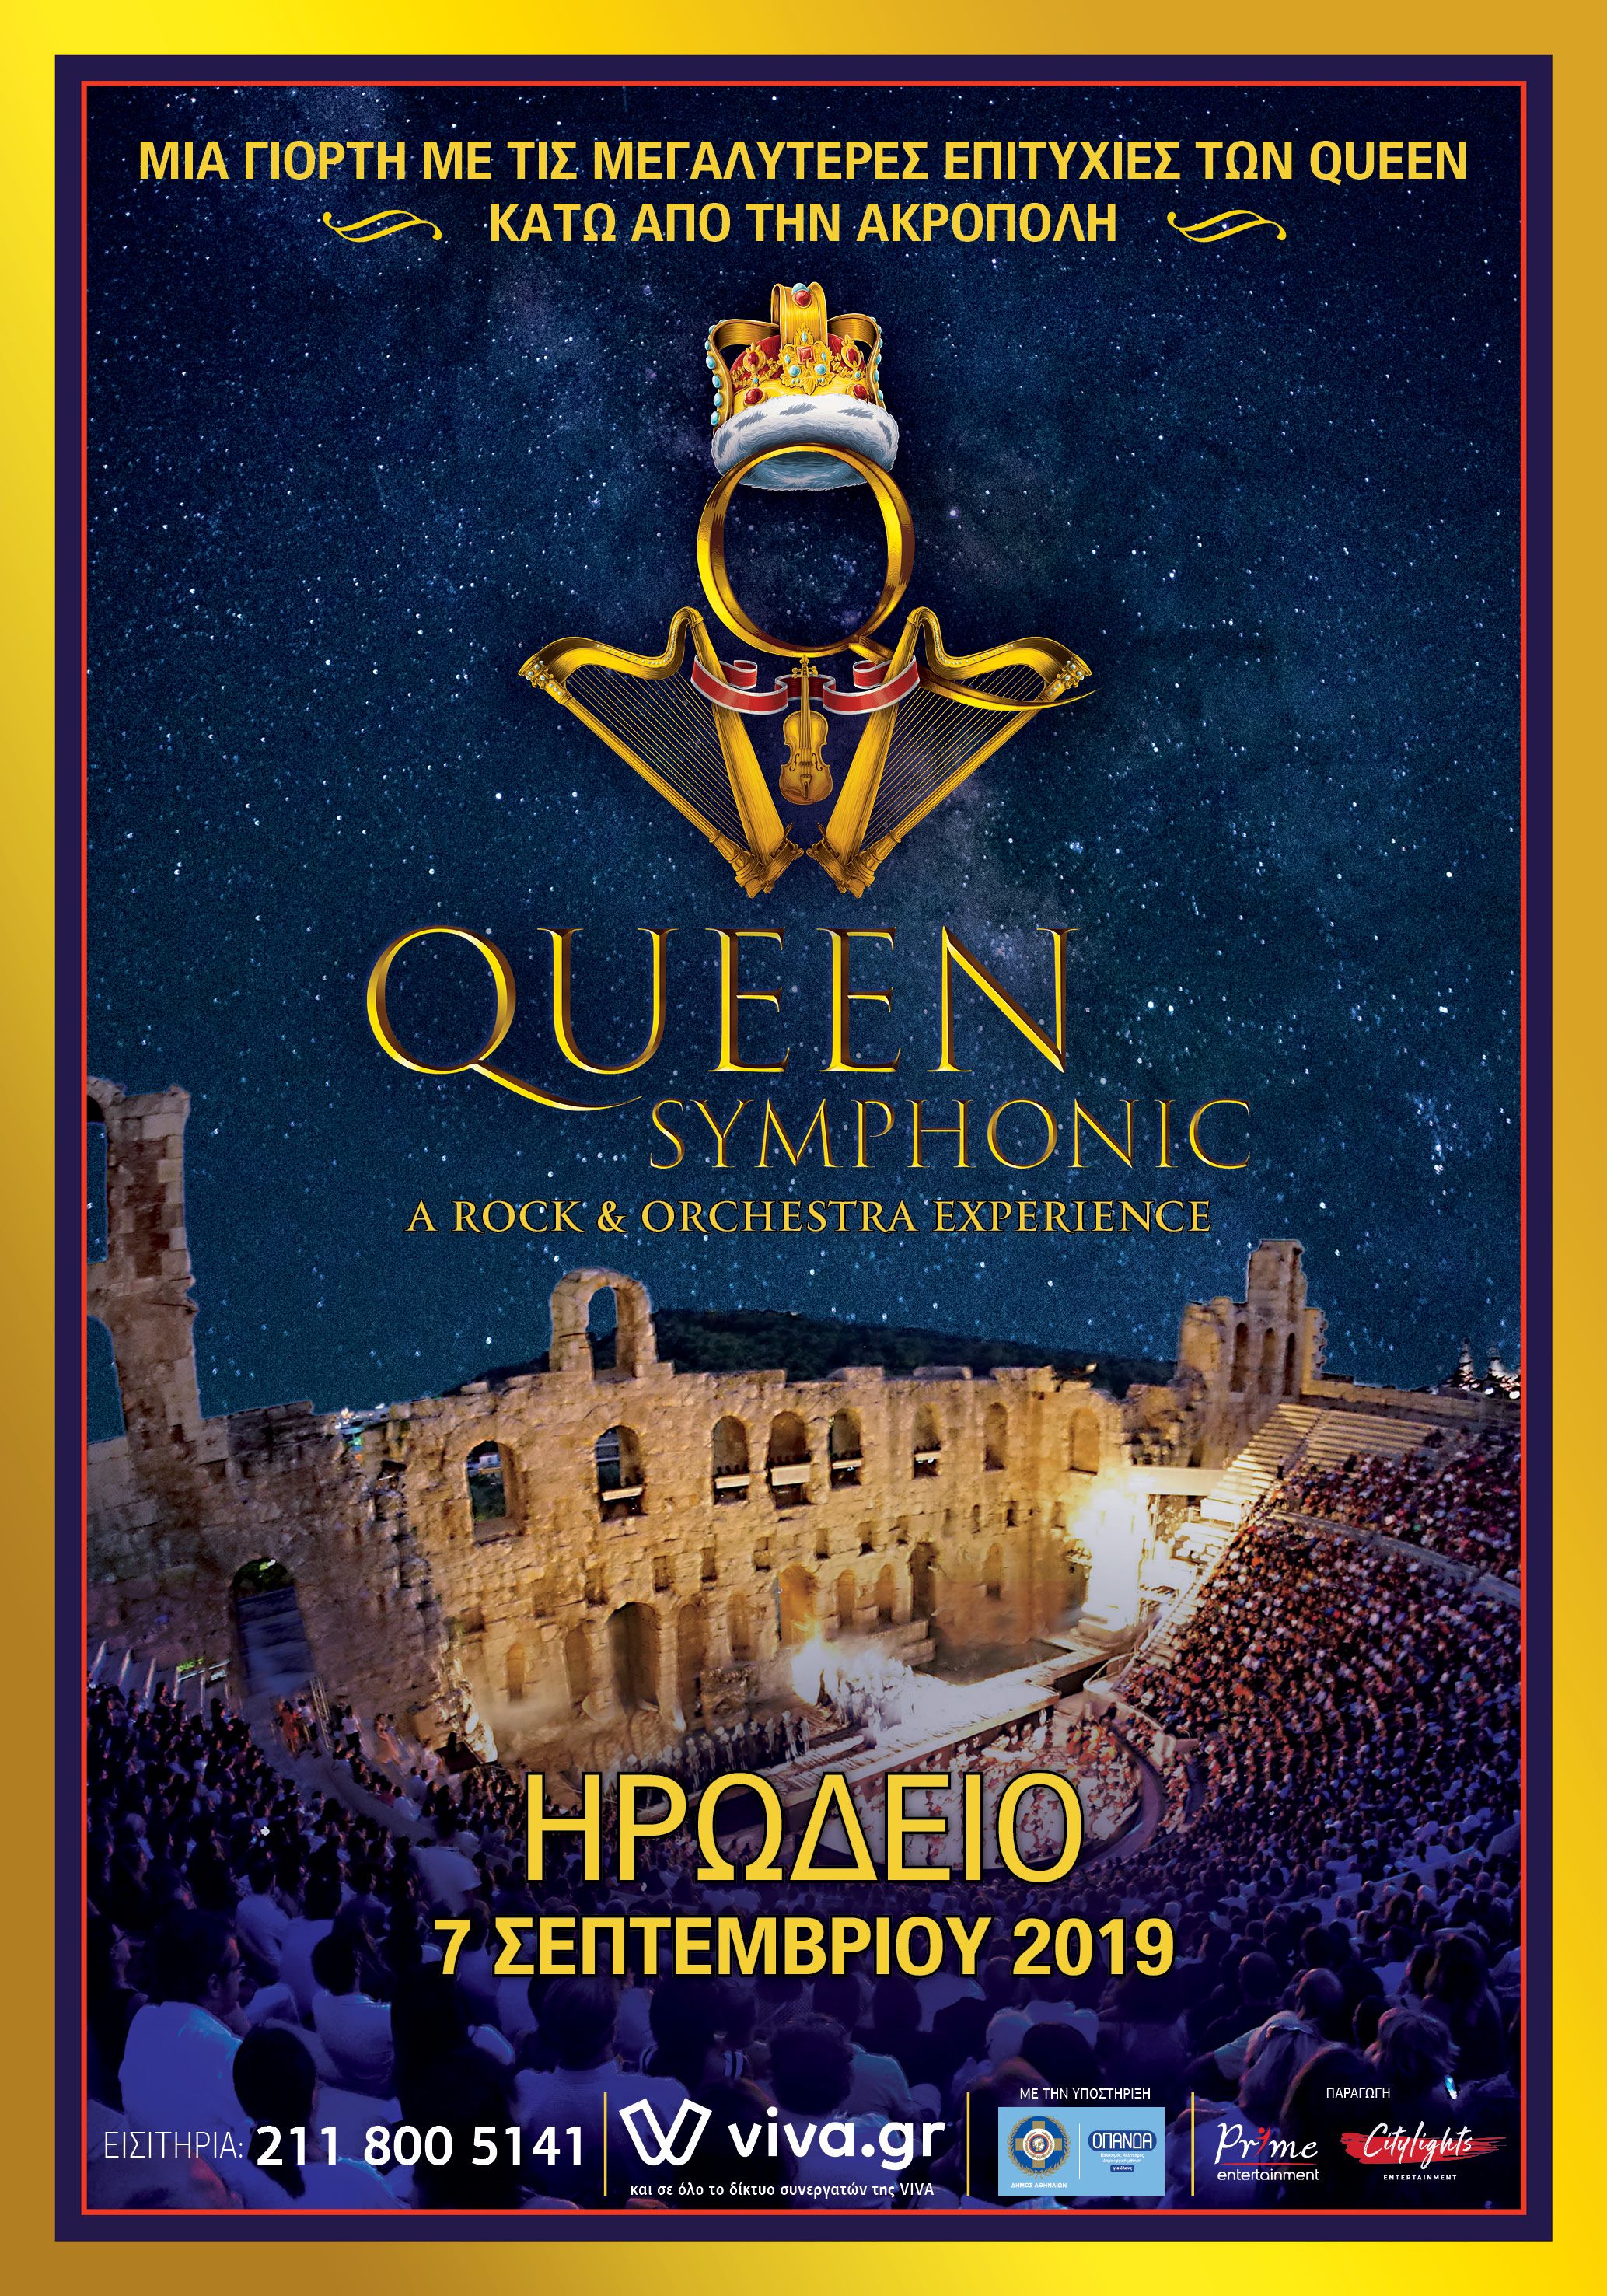 halion symphonic orchestra review